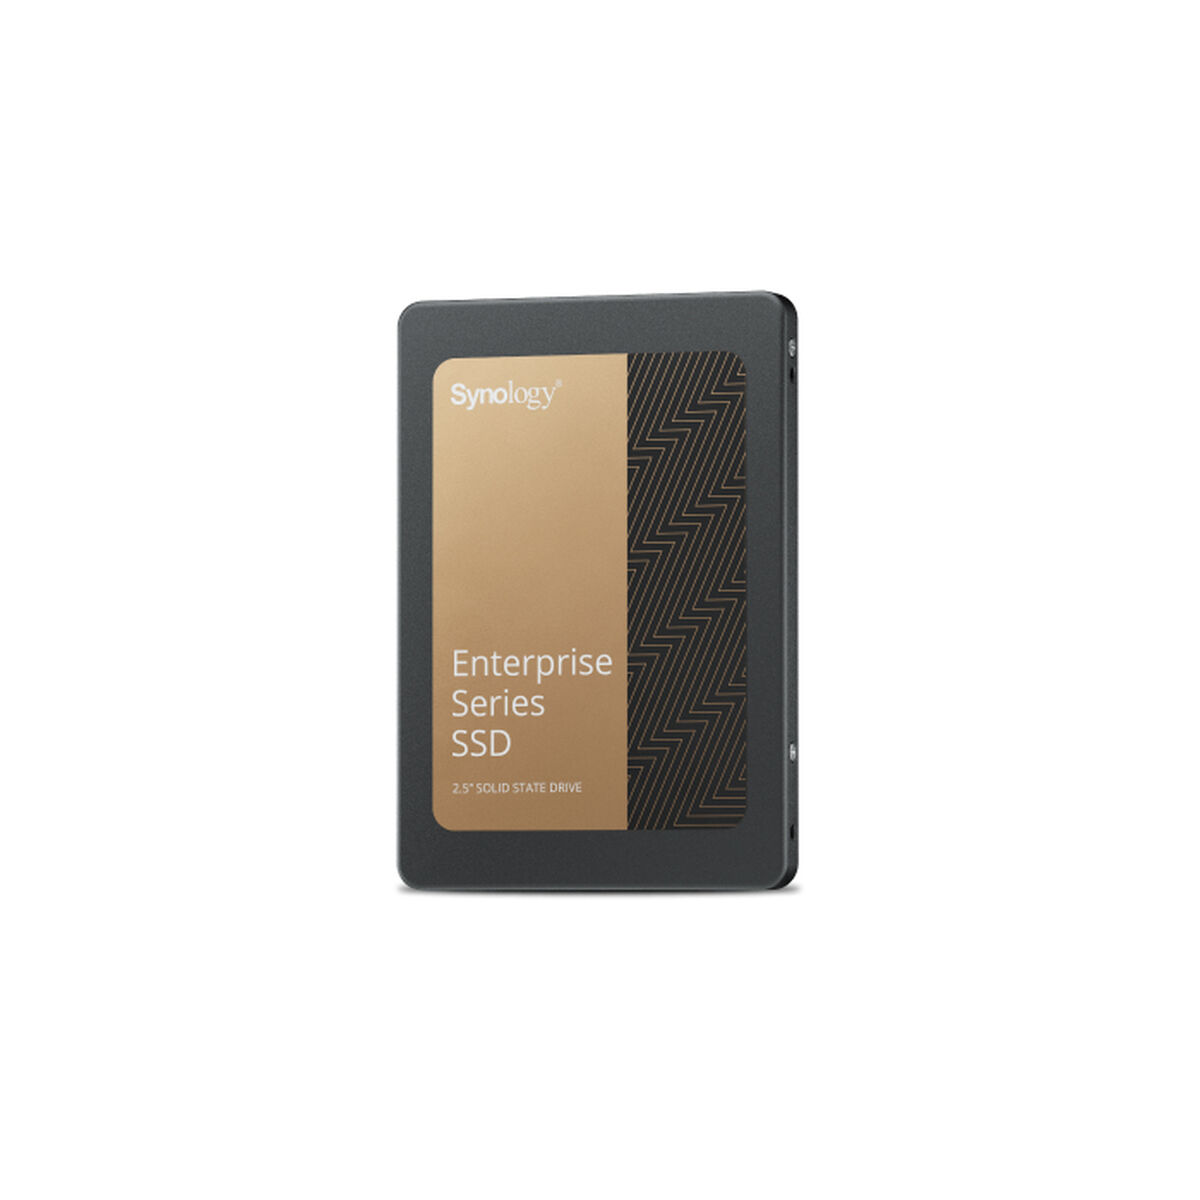 Osta tuote Kovalevy Synology SAT5220-1920G 1,92 TB SSD verkkokaupastamme Korhone: Tietokoneet & Elektroniikka 10% alennuksella koodilla KORHONE